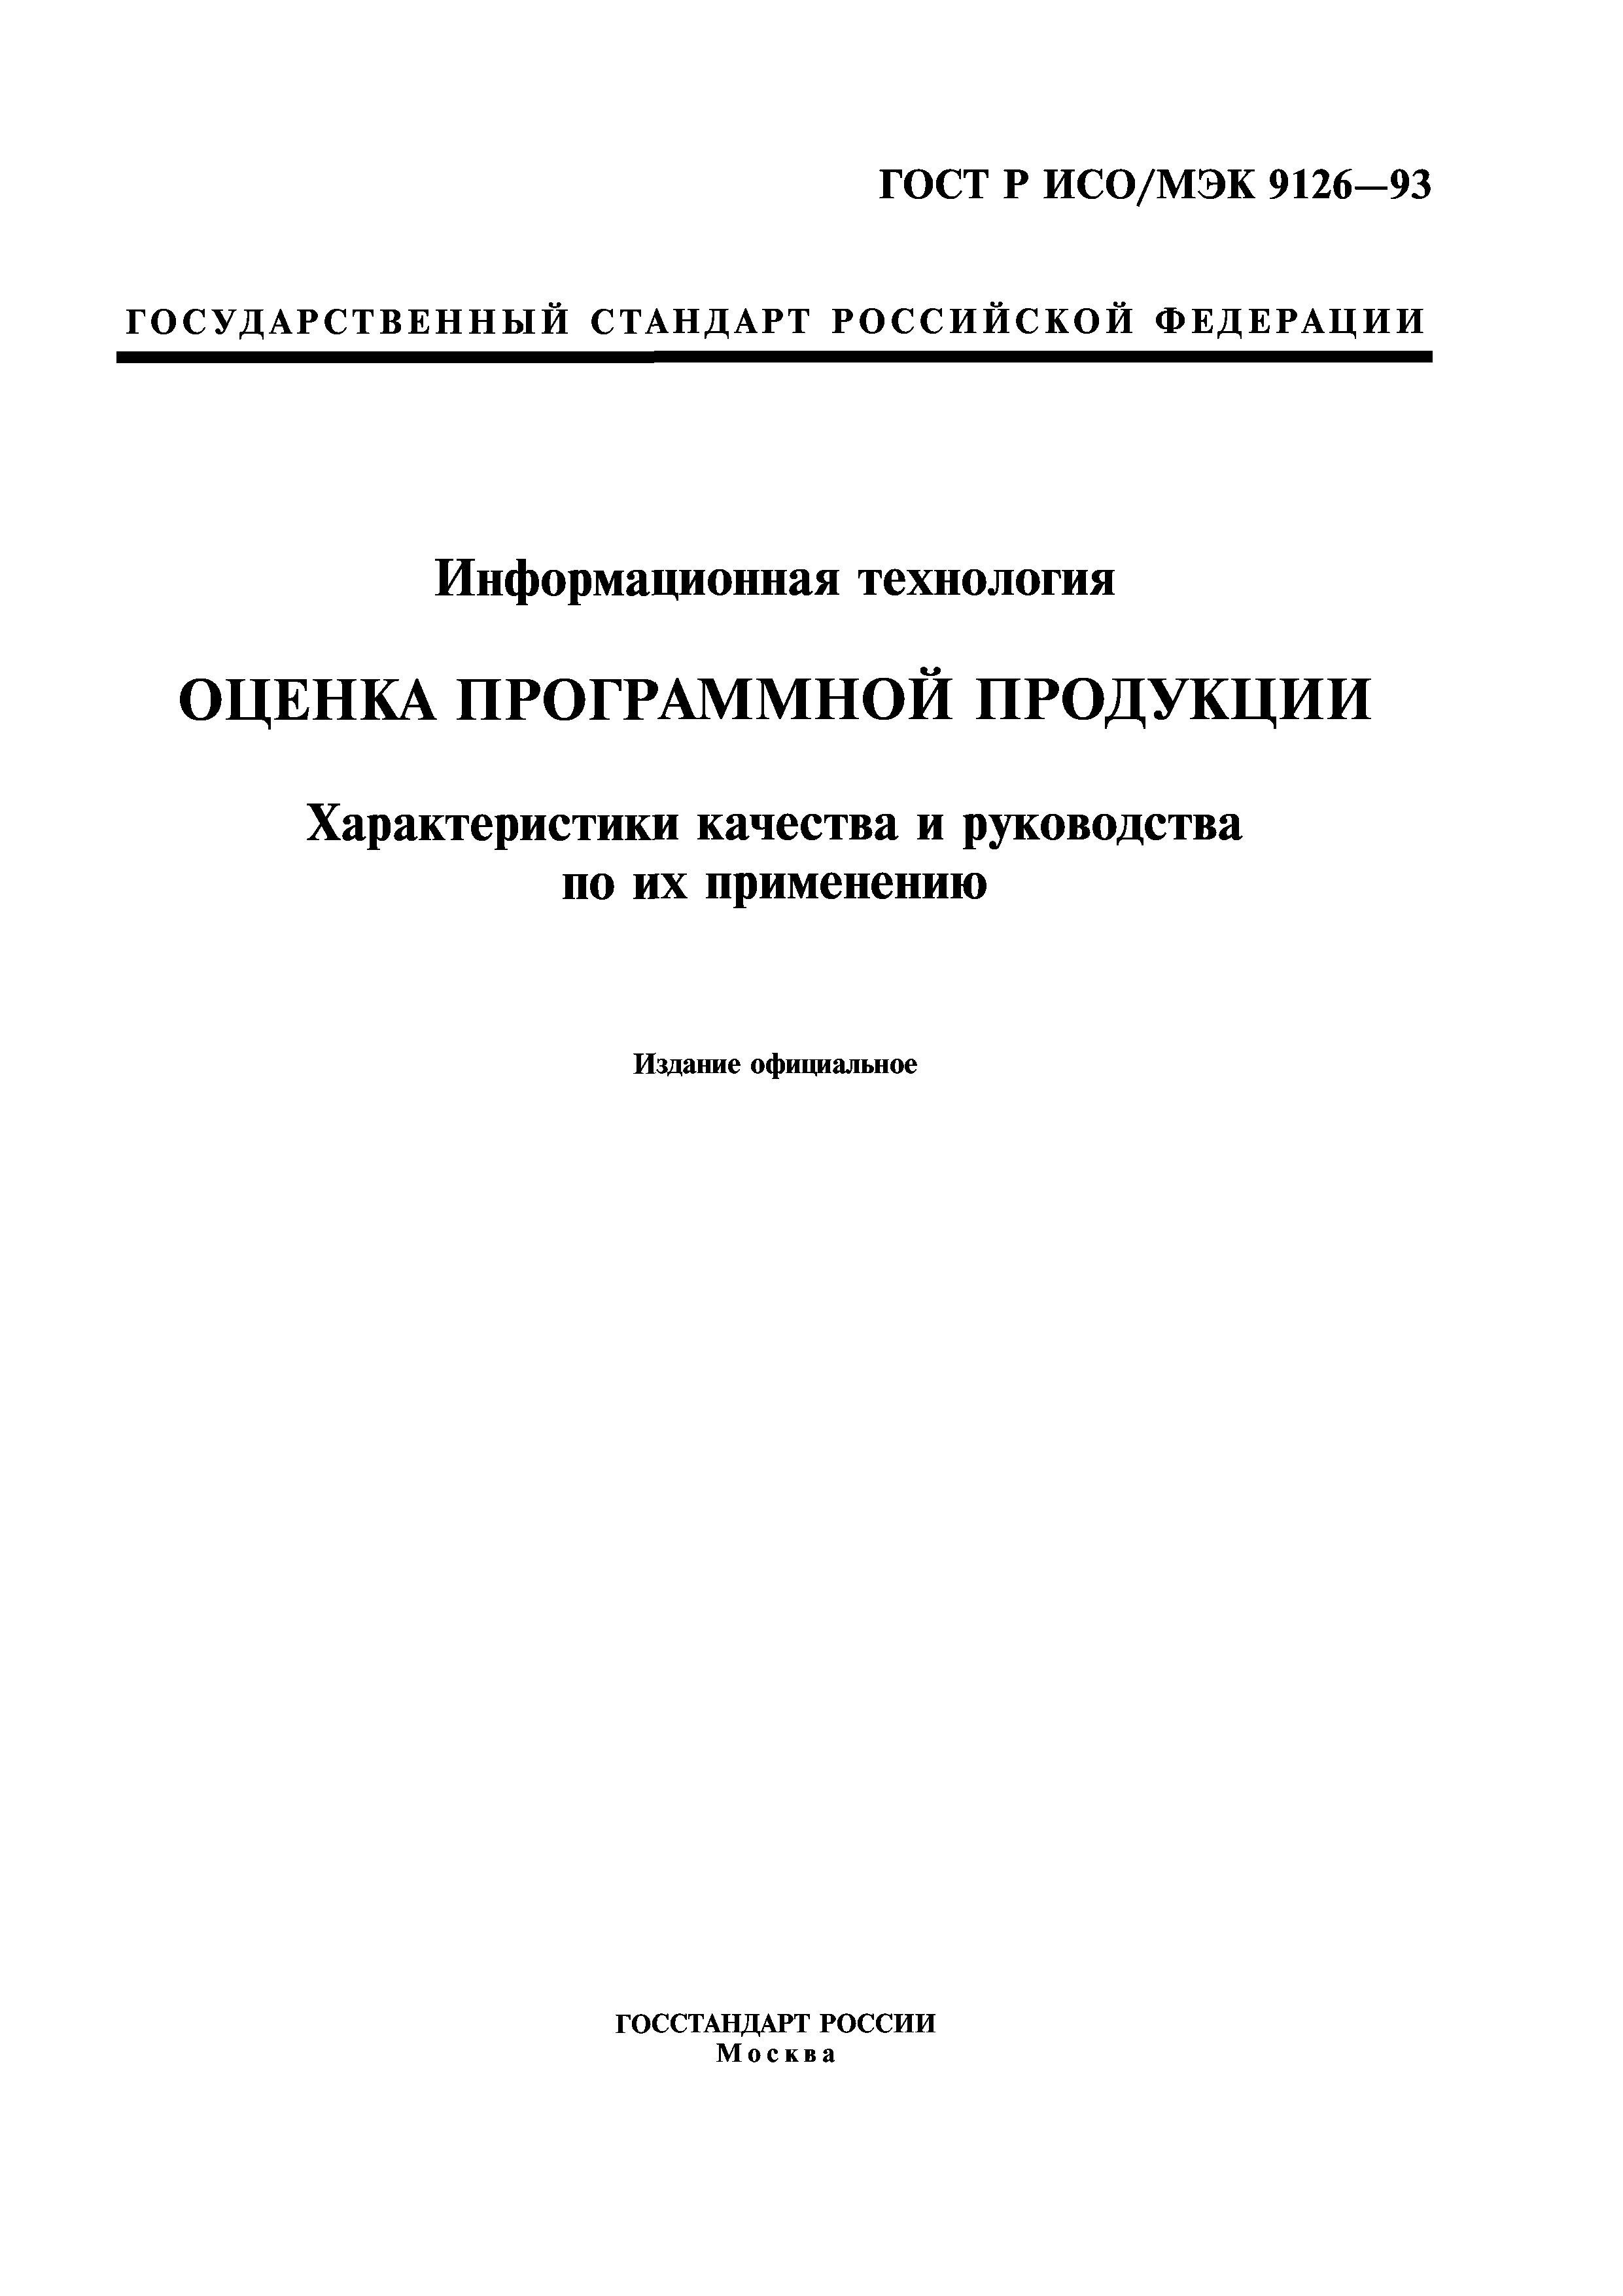 ГОСТ Р ИСО/МЭК 9126-93